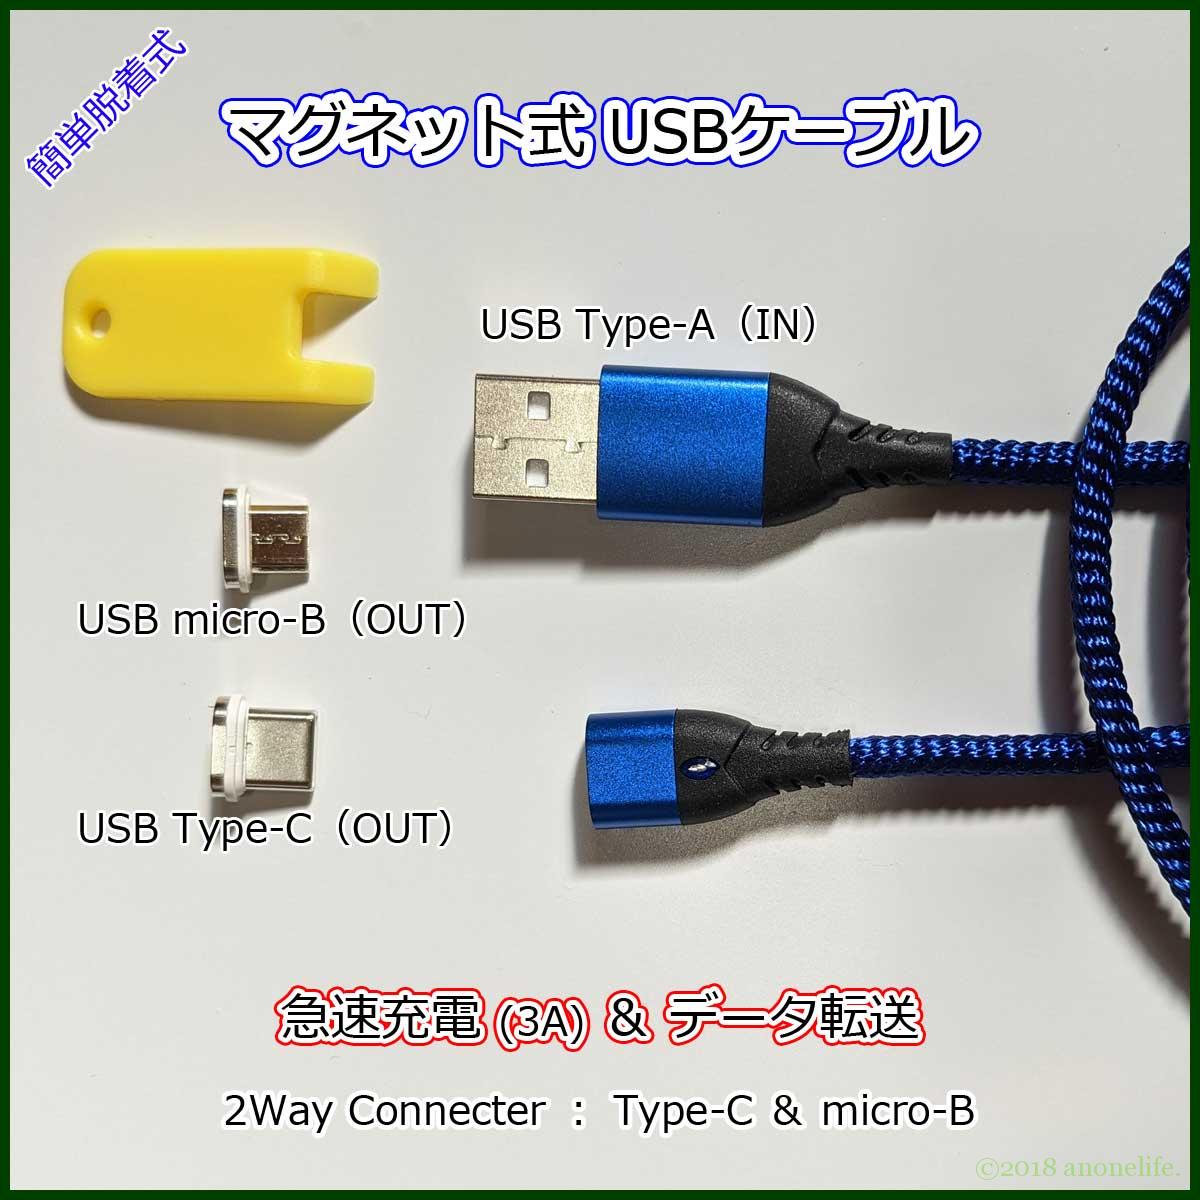 マグネット式 USBケーブル Type-C Micro-B